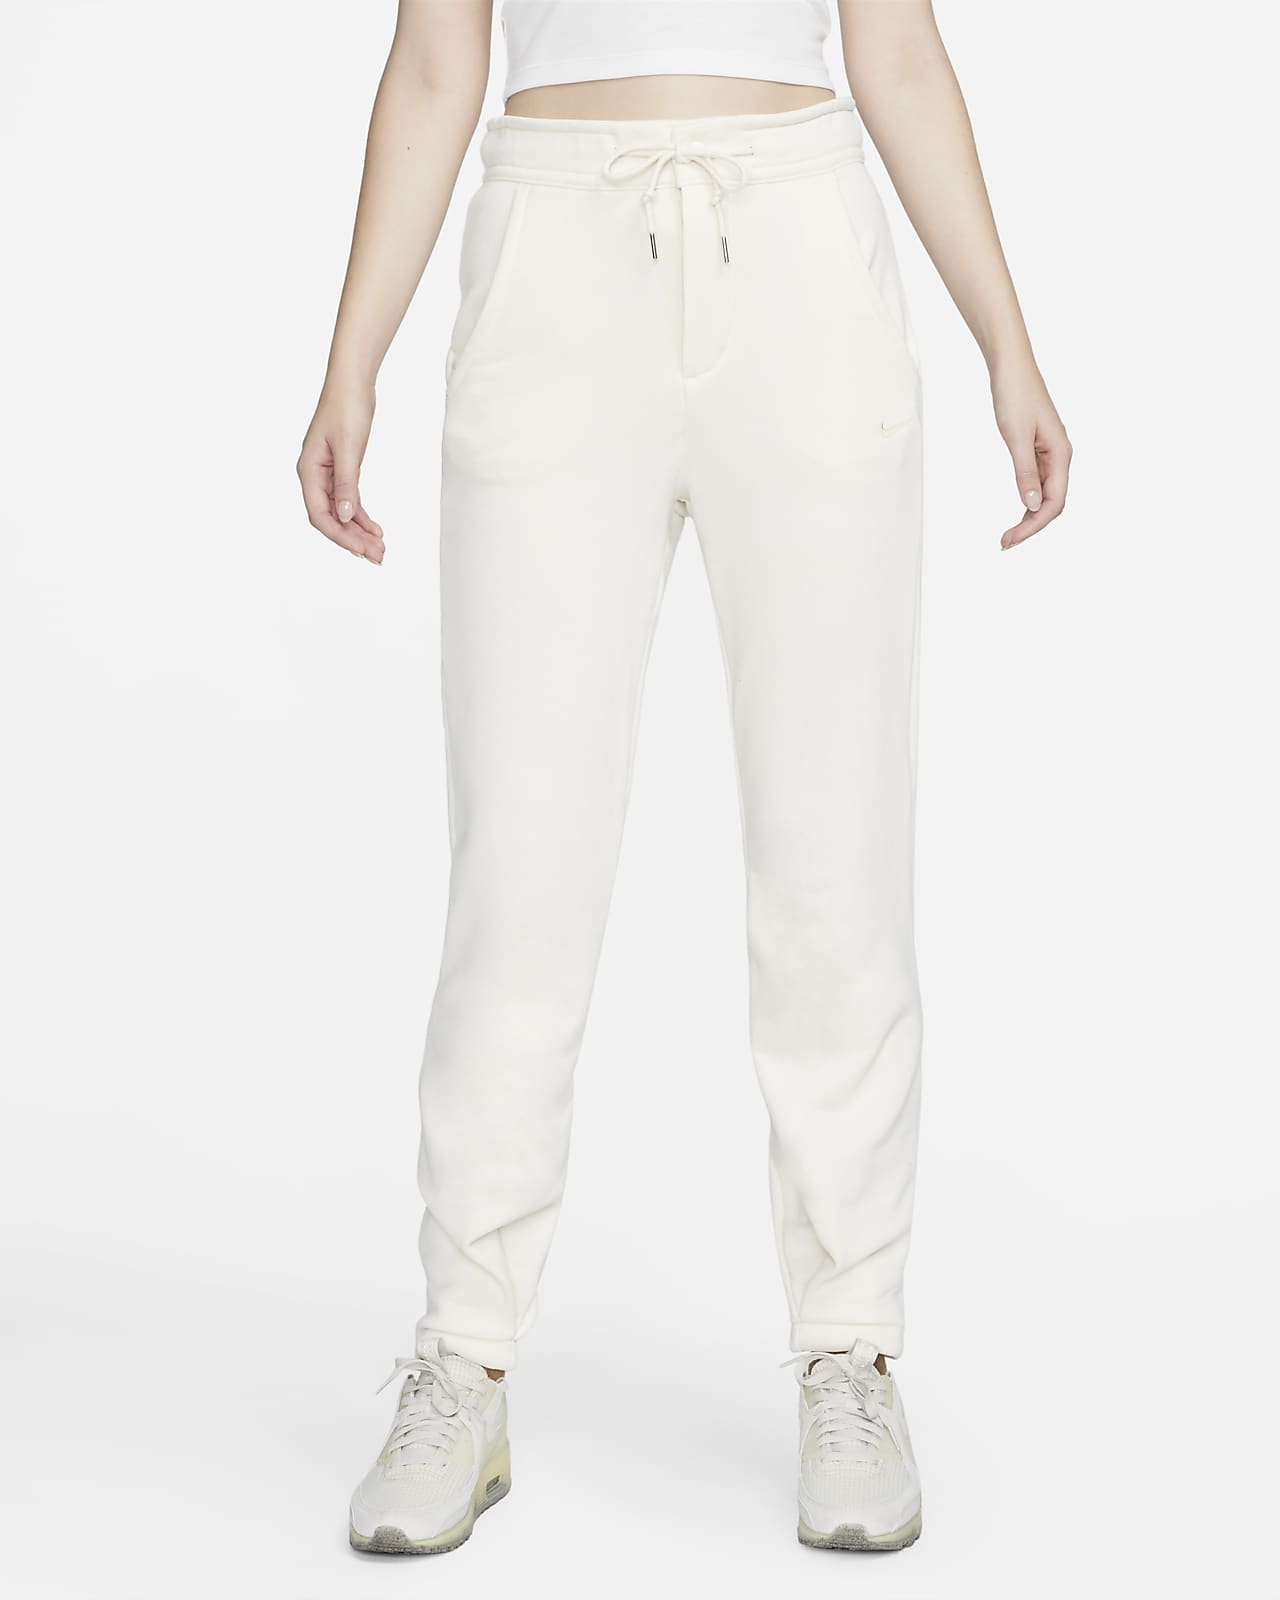 Spodnie WMNS Nike Sportswear Essential Grey Heather/White CZ8532-063